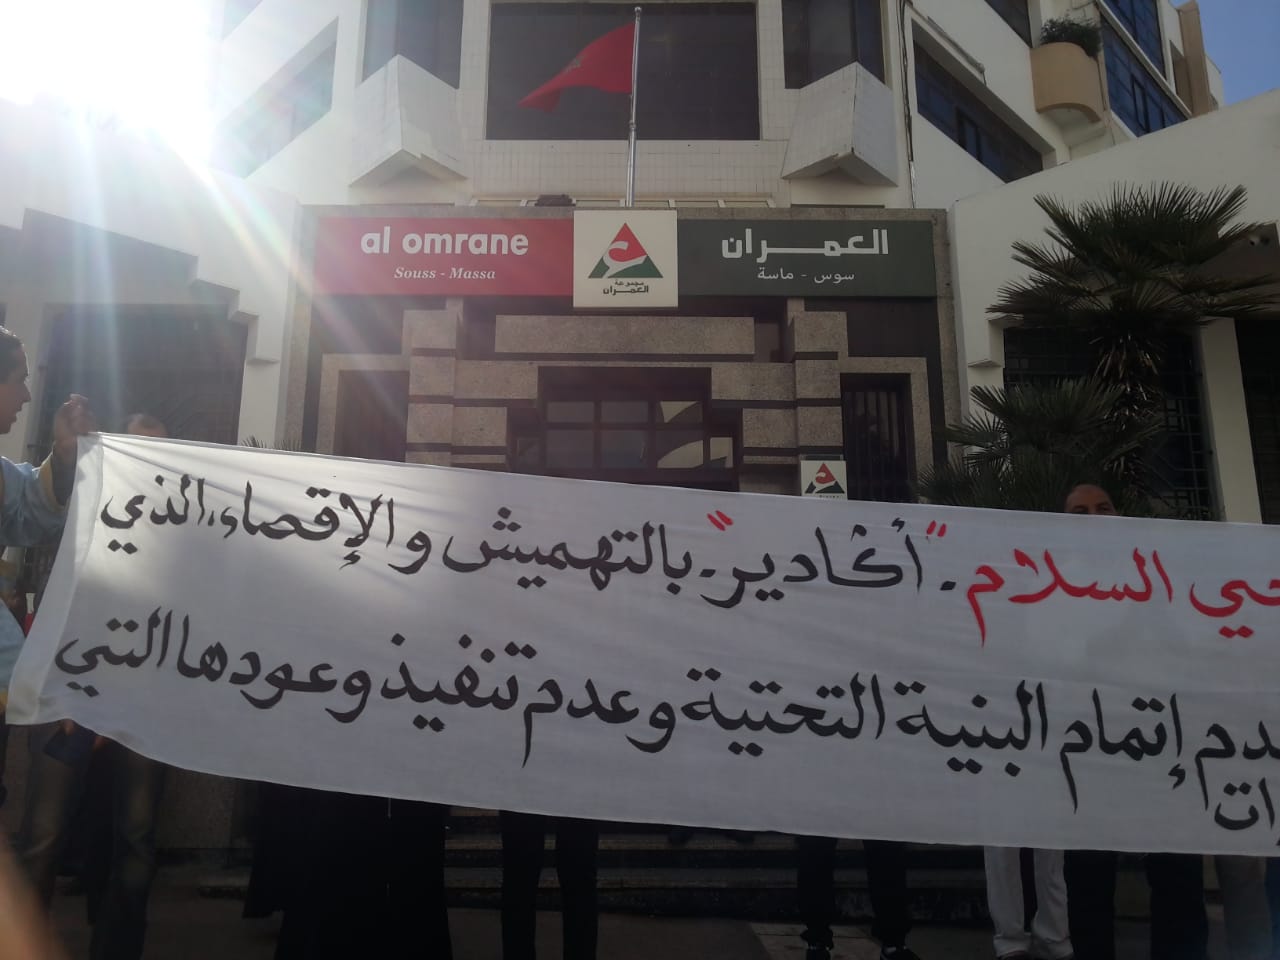 ضحايا ” العمران ” يحتجون أمام مقرها في أكادير